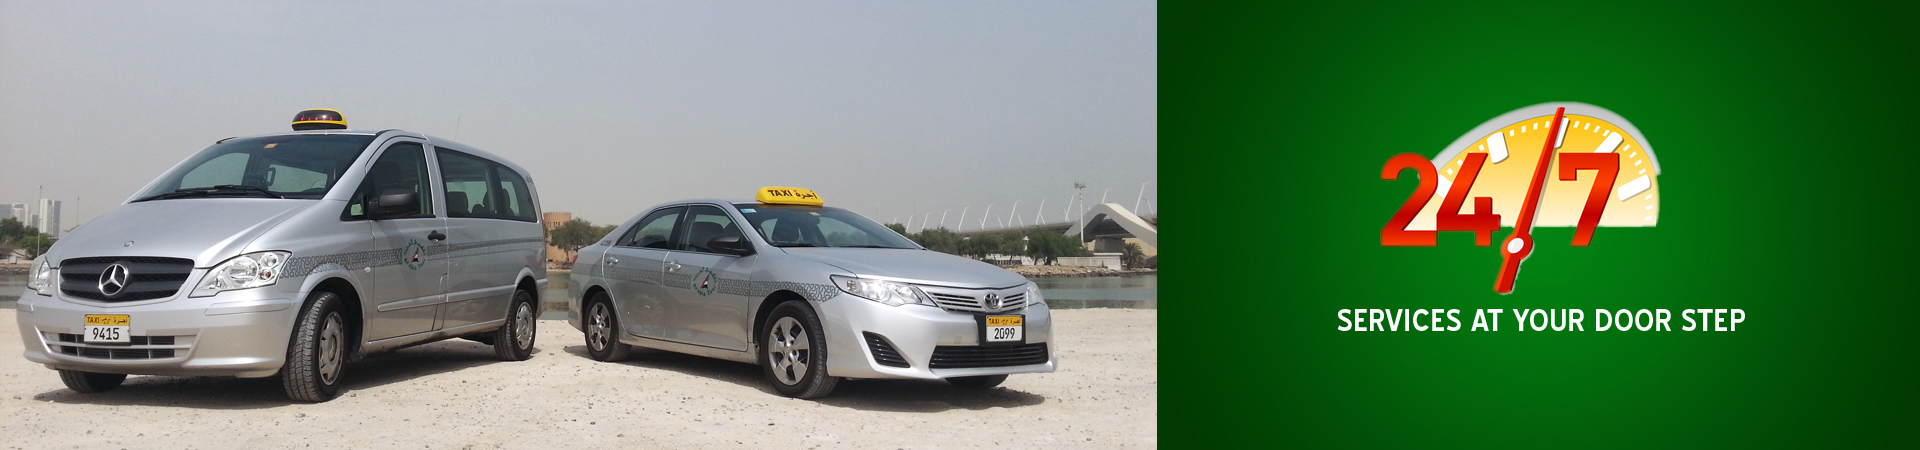 Arabia Taxi LLC, Abu Dhabi & Al Ain